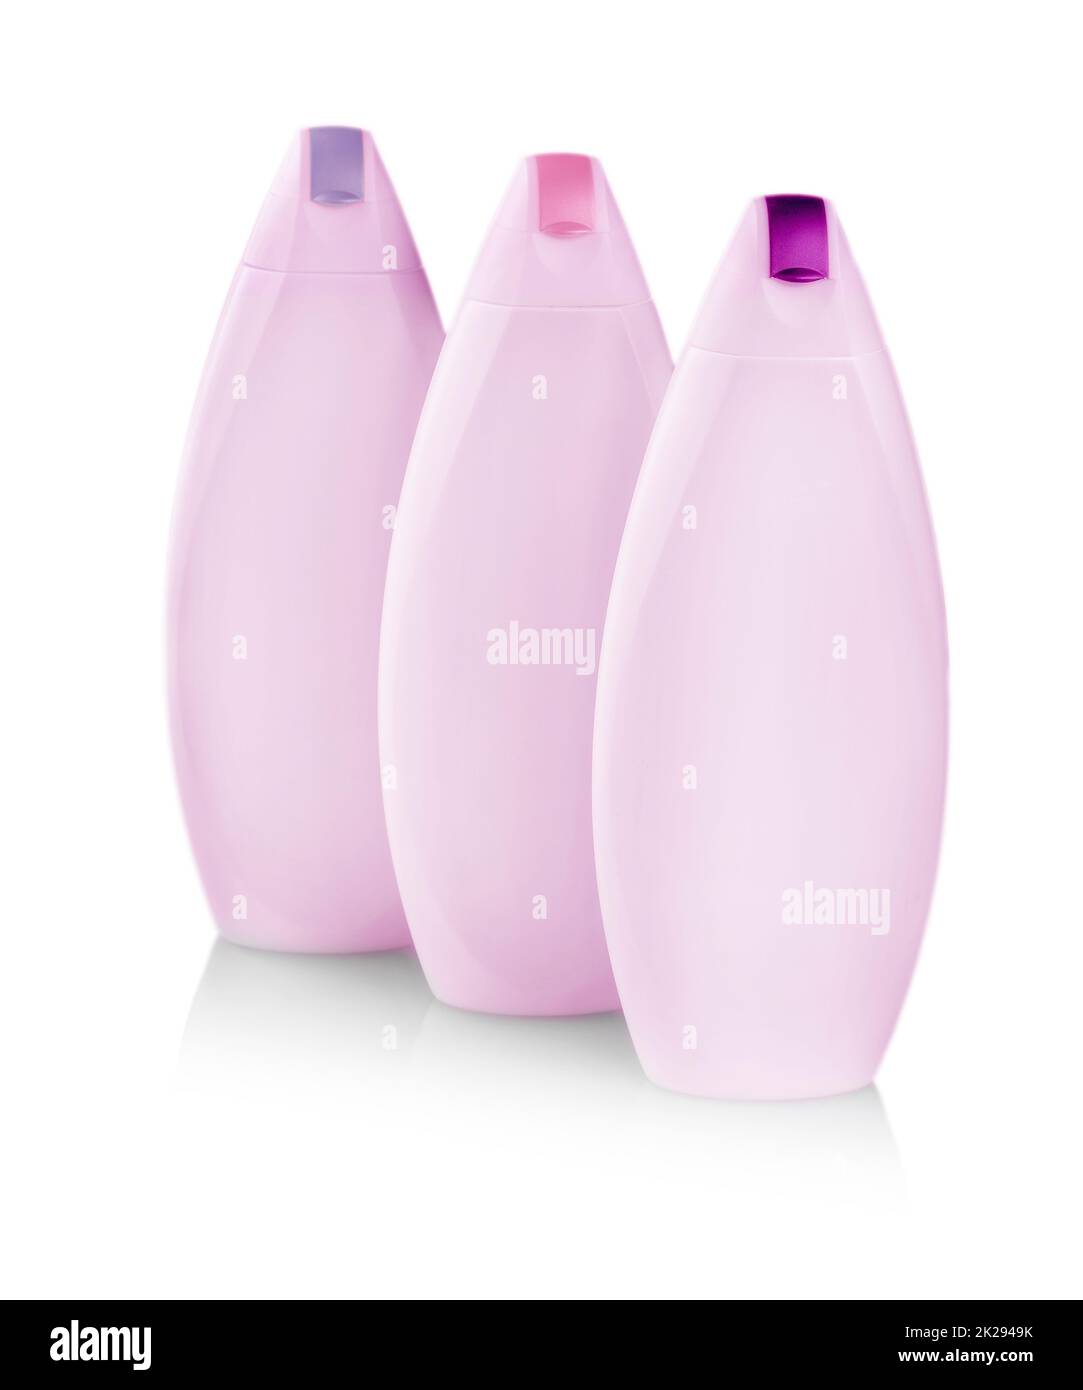 Rosafarbene Plastikflaschen mit farbigen Umschlägen aus Körperpflege- und Schönheitsprodukten. Studiofotografie einer Plastikflasche für Shampoo - isoliert auf weißem Hintergrund Stockfoto